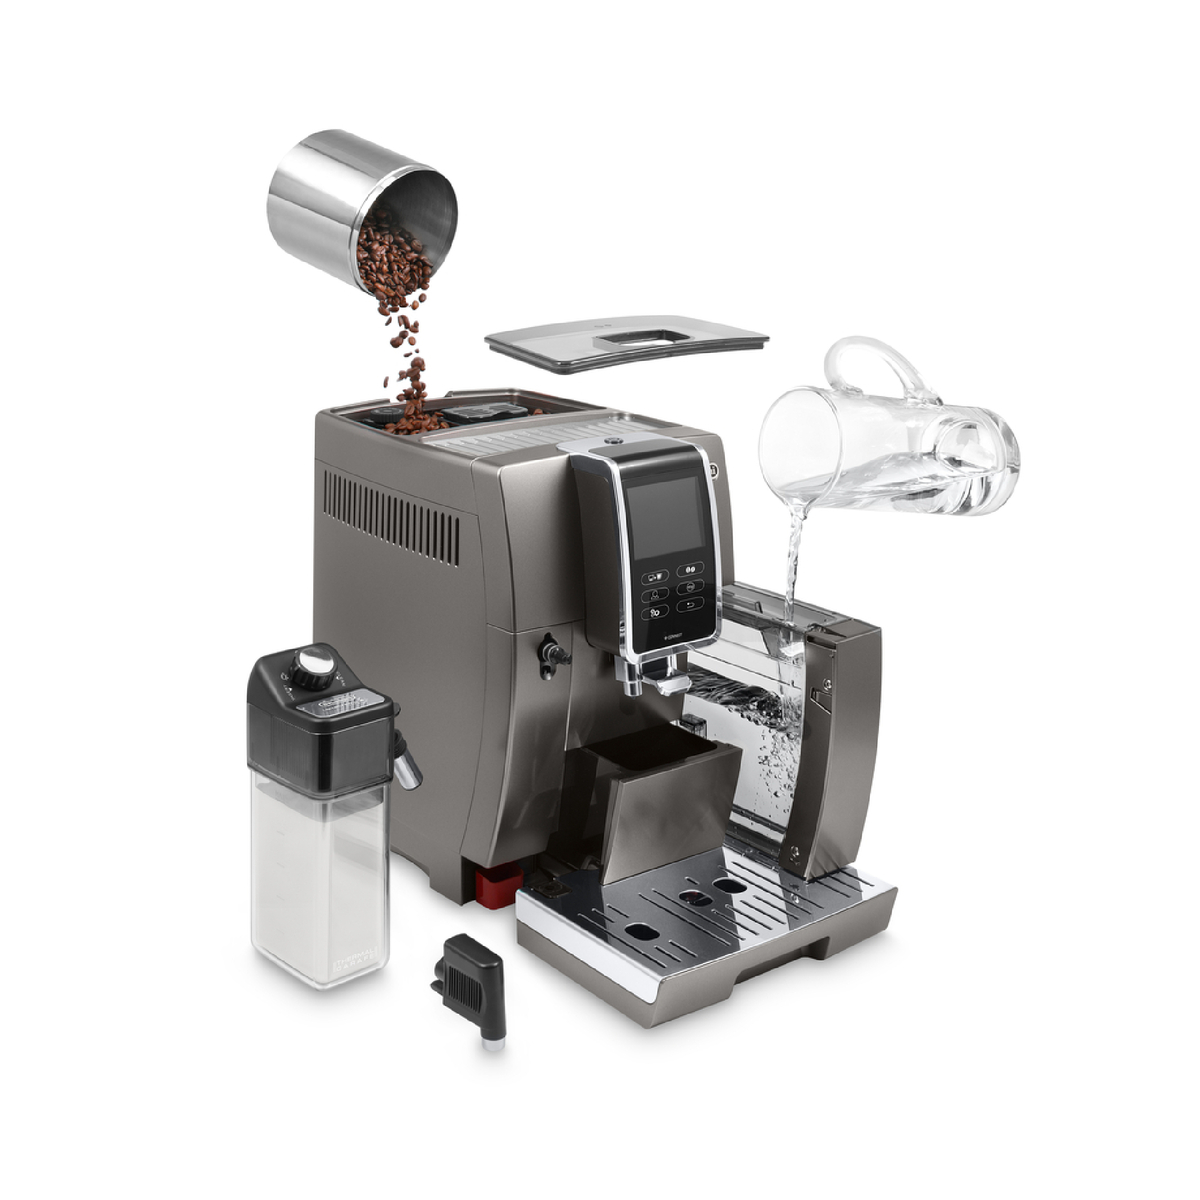 ديلونجي ماكينة صنع القهوة الأوتوماتيكية ديناميكا بلس ، 1.8 لتر ، 1450 واط ، تيتانيوم ، ECAM370.95T